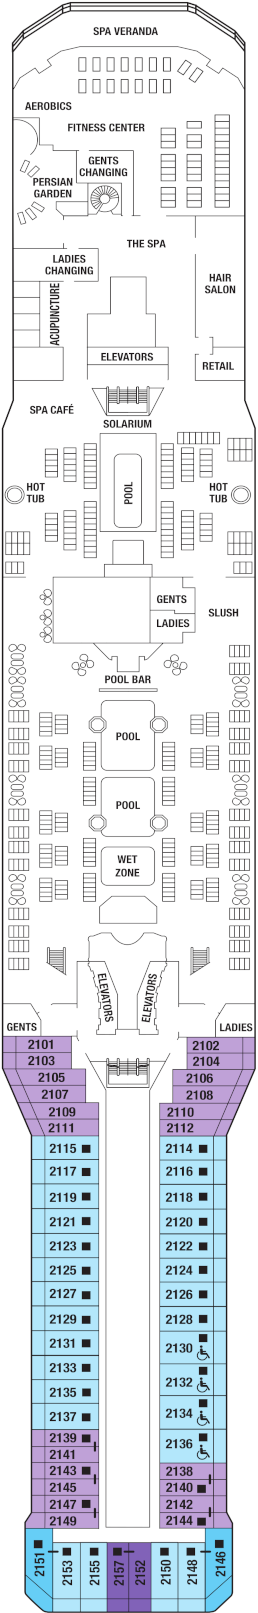 Celebrity Equinox Resort Deck Deck Plan